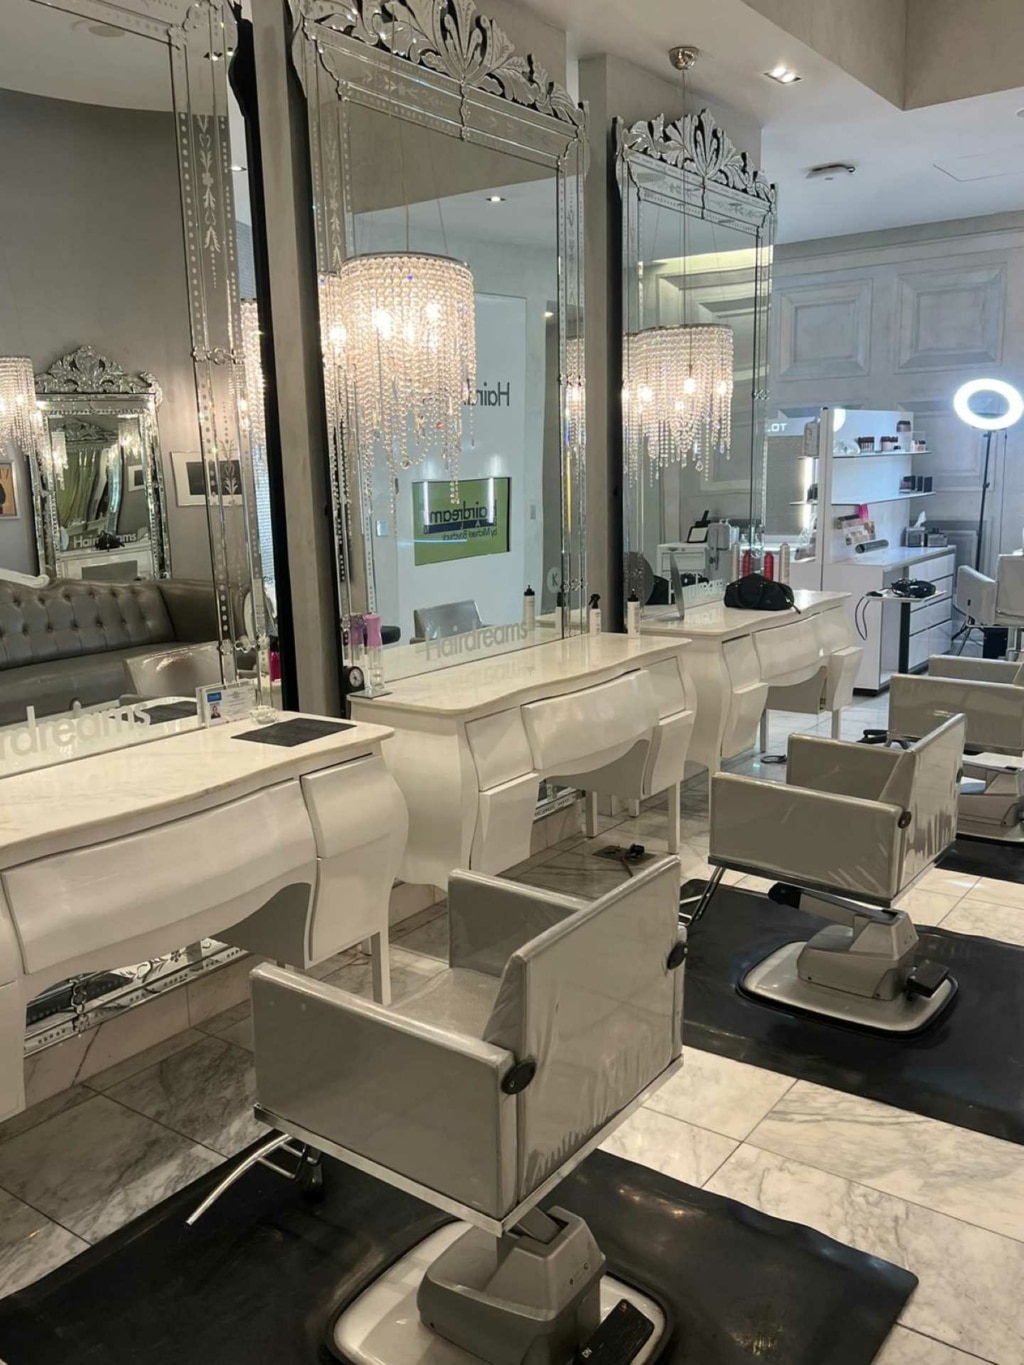 Luxuriöse Inneneinrichtung eines Hairdreams-Salons